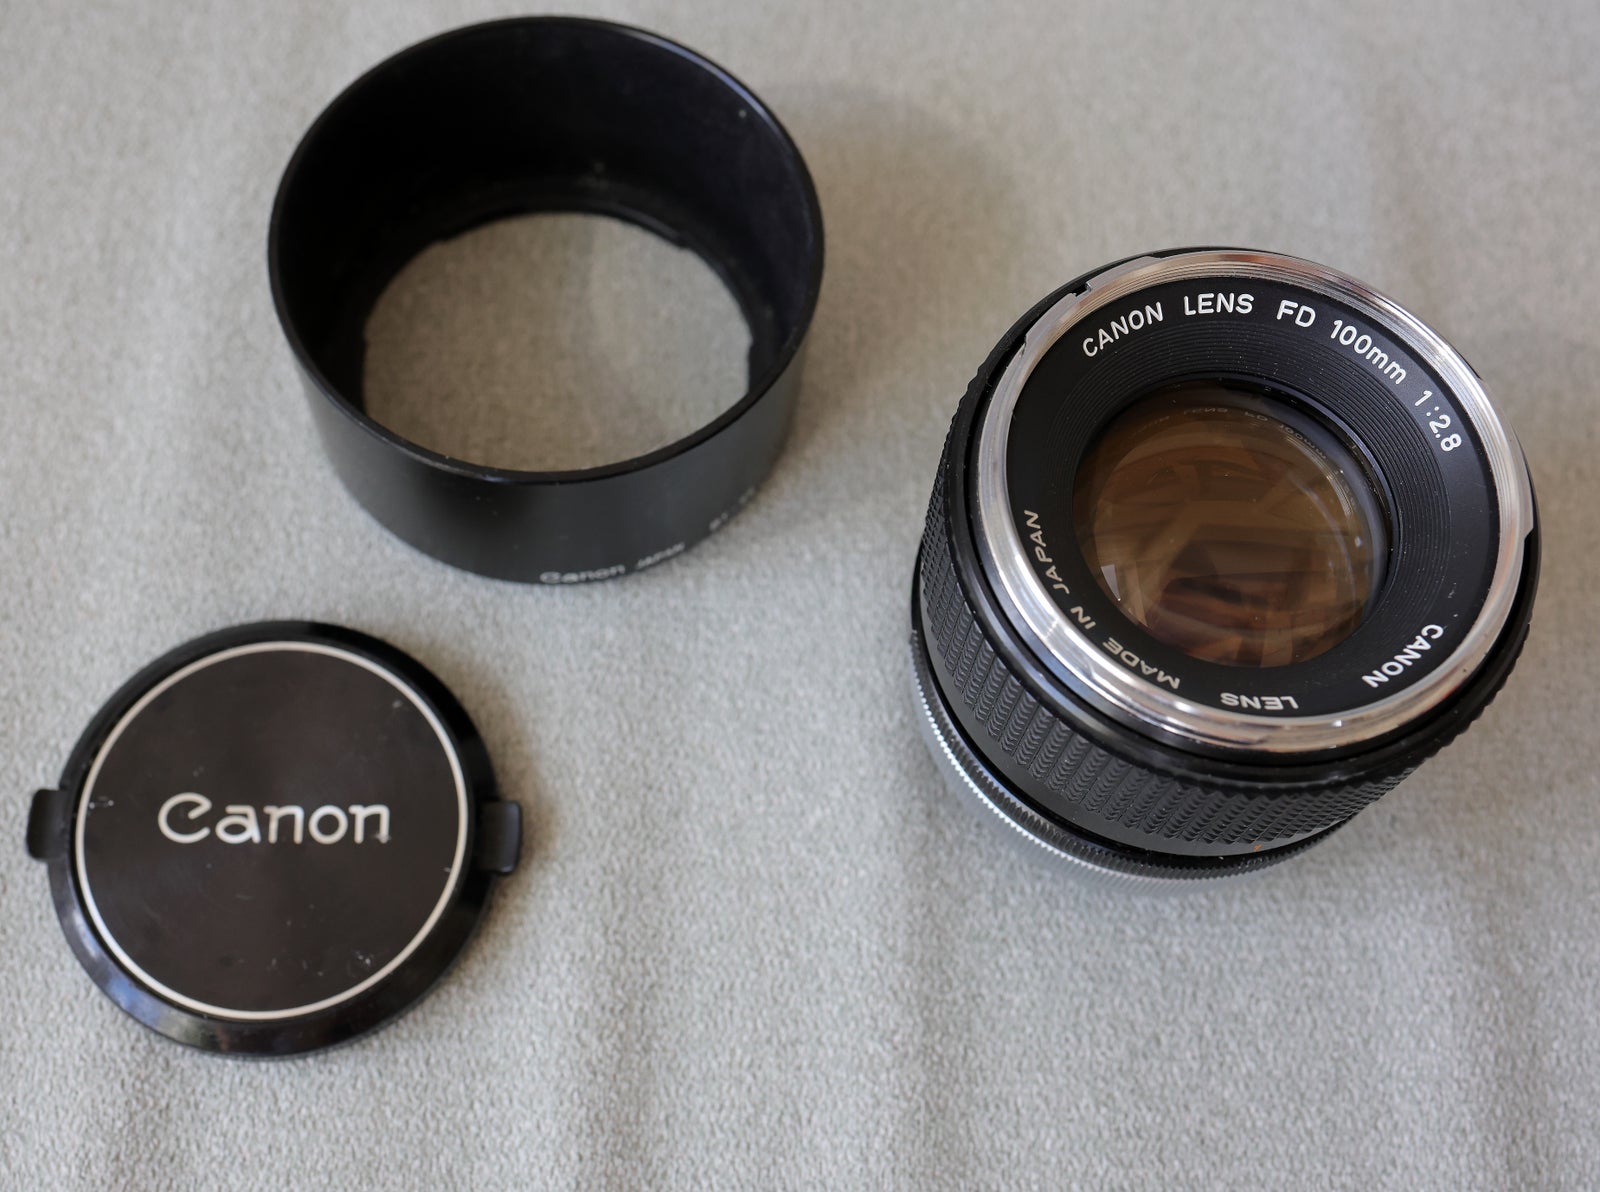 Portrætteleobjektiv, Canon, FD 100mm 2.8